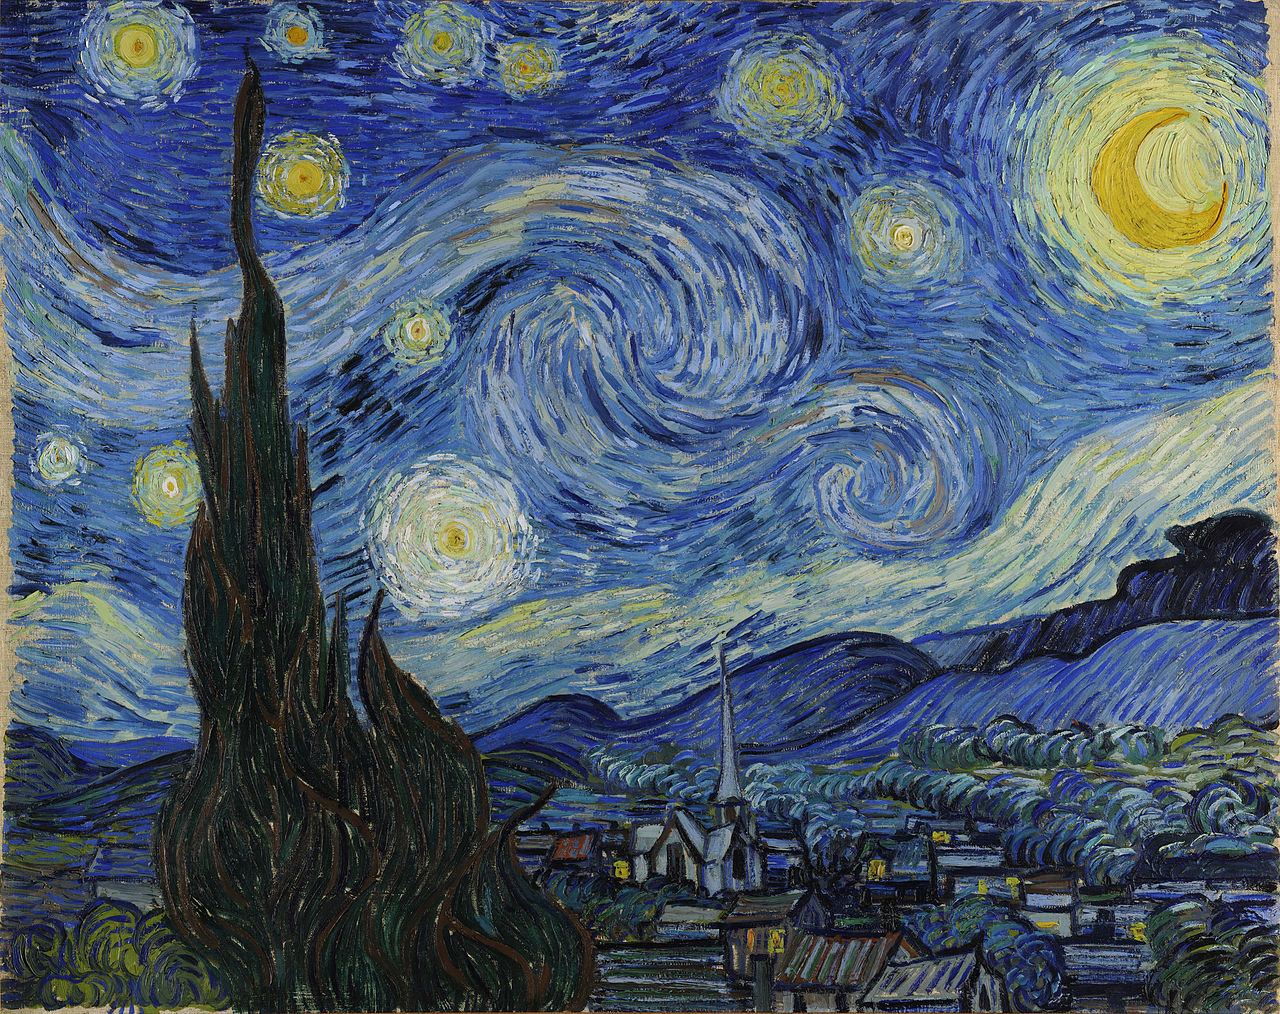 A Noite Estrelada by Vincent van Gogh - 1889 Museum of Modern Art